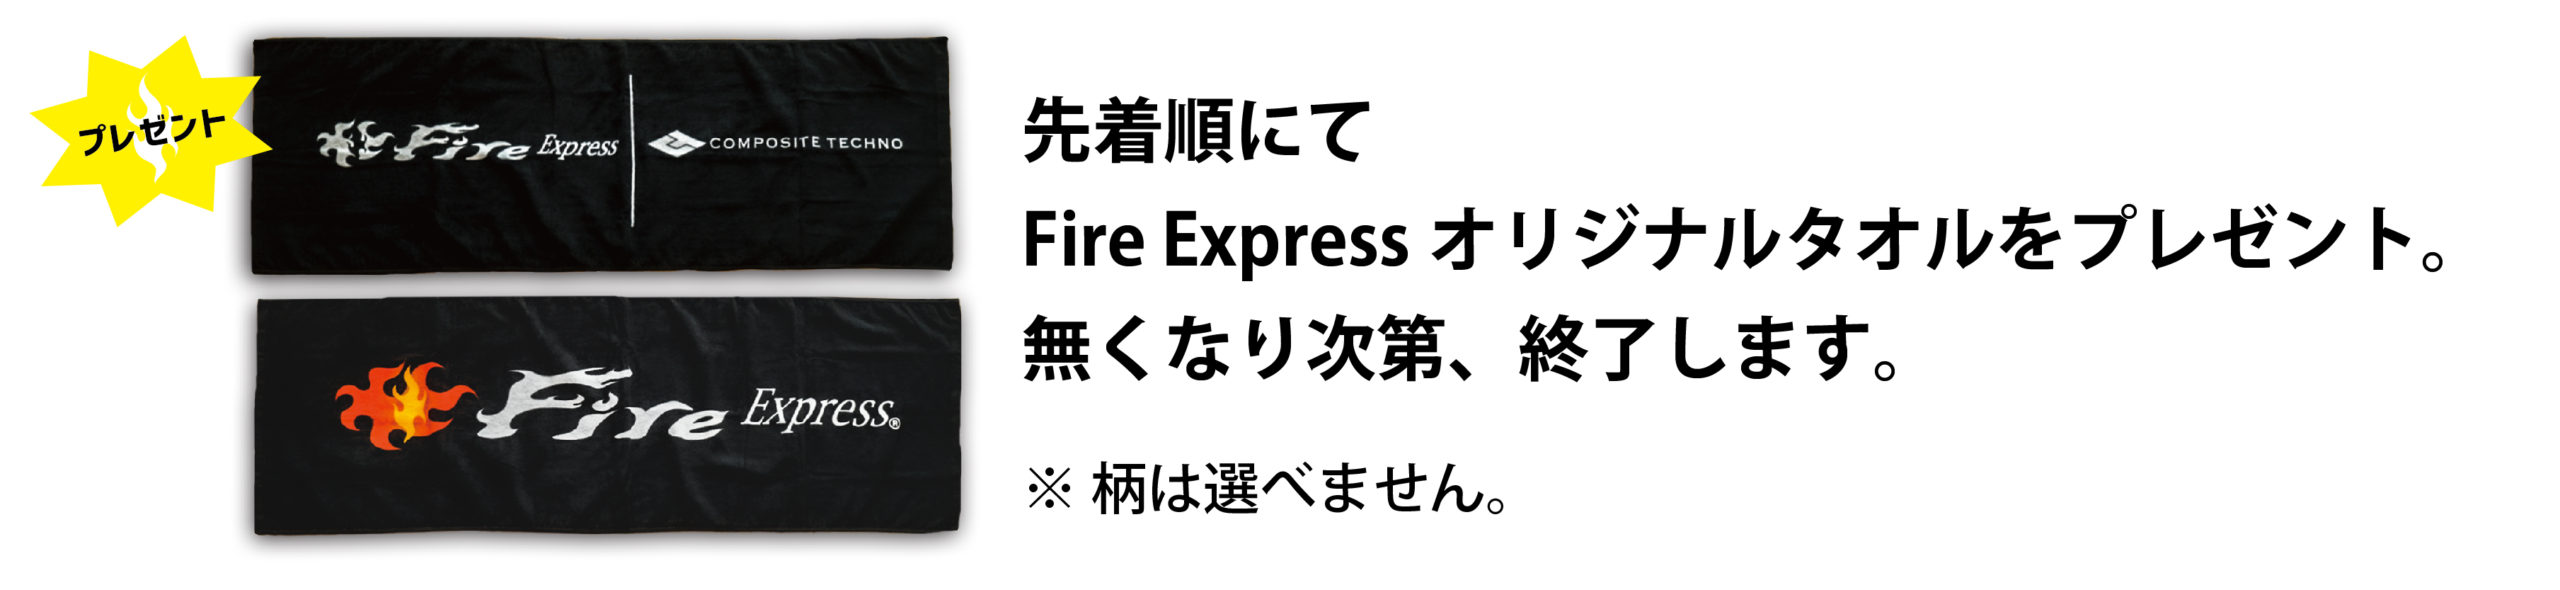 FireExpress オリジナルタオル